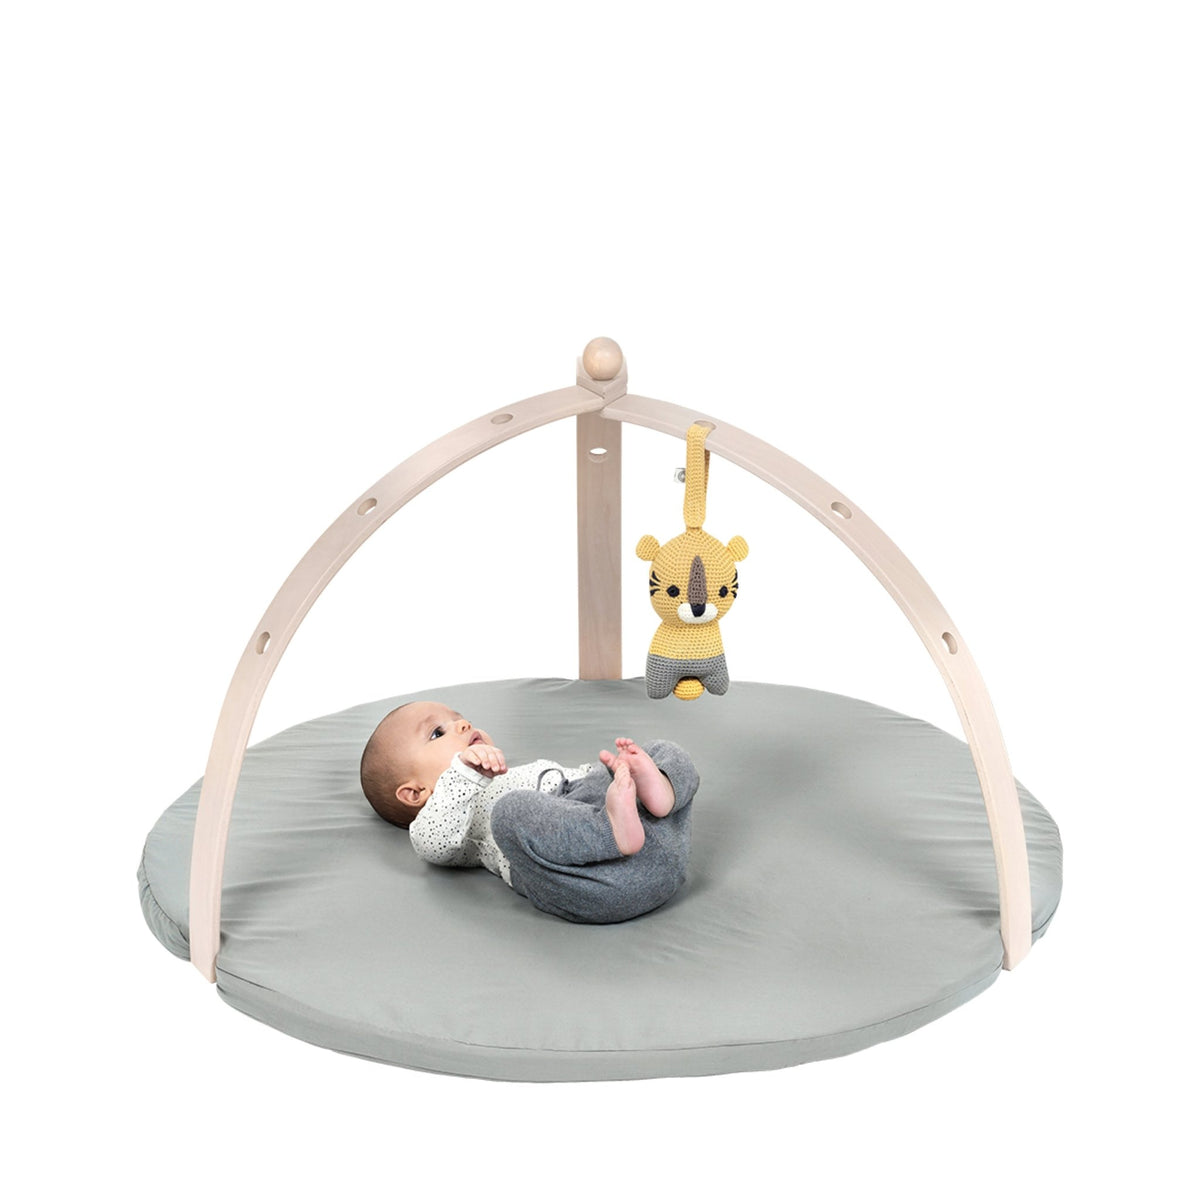 Baby Mat by Franck & Fischer - Maude Kids Decor